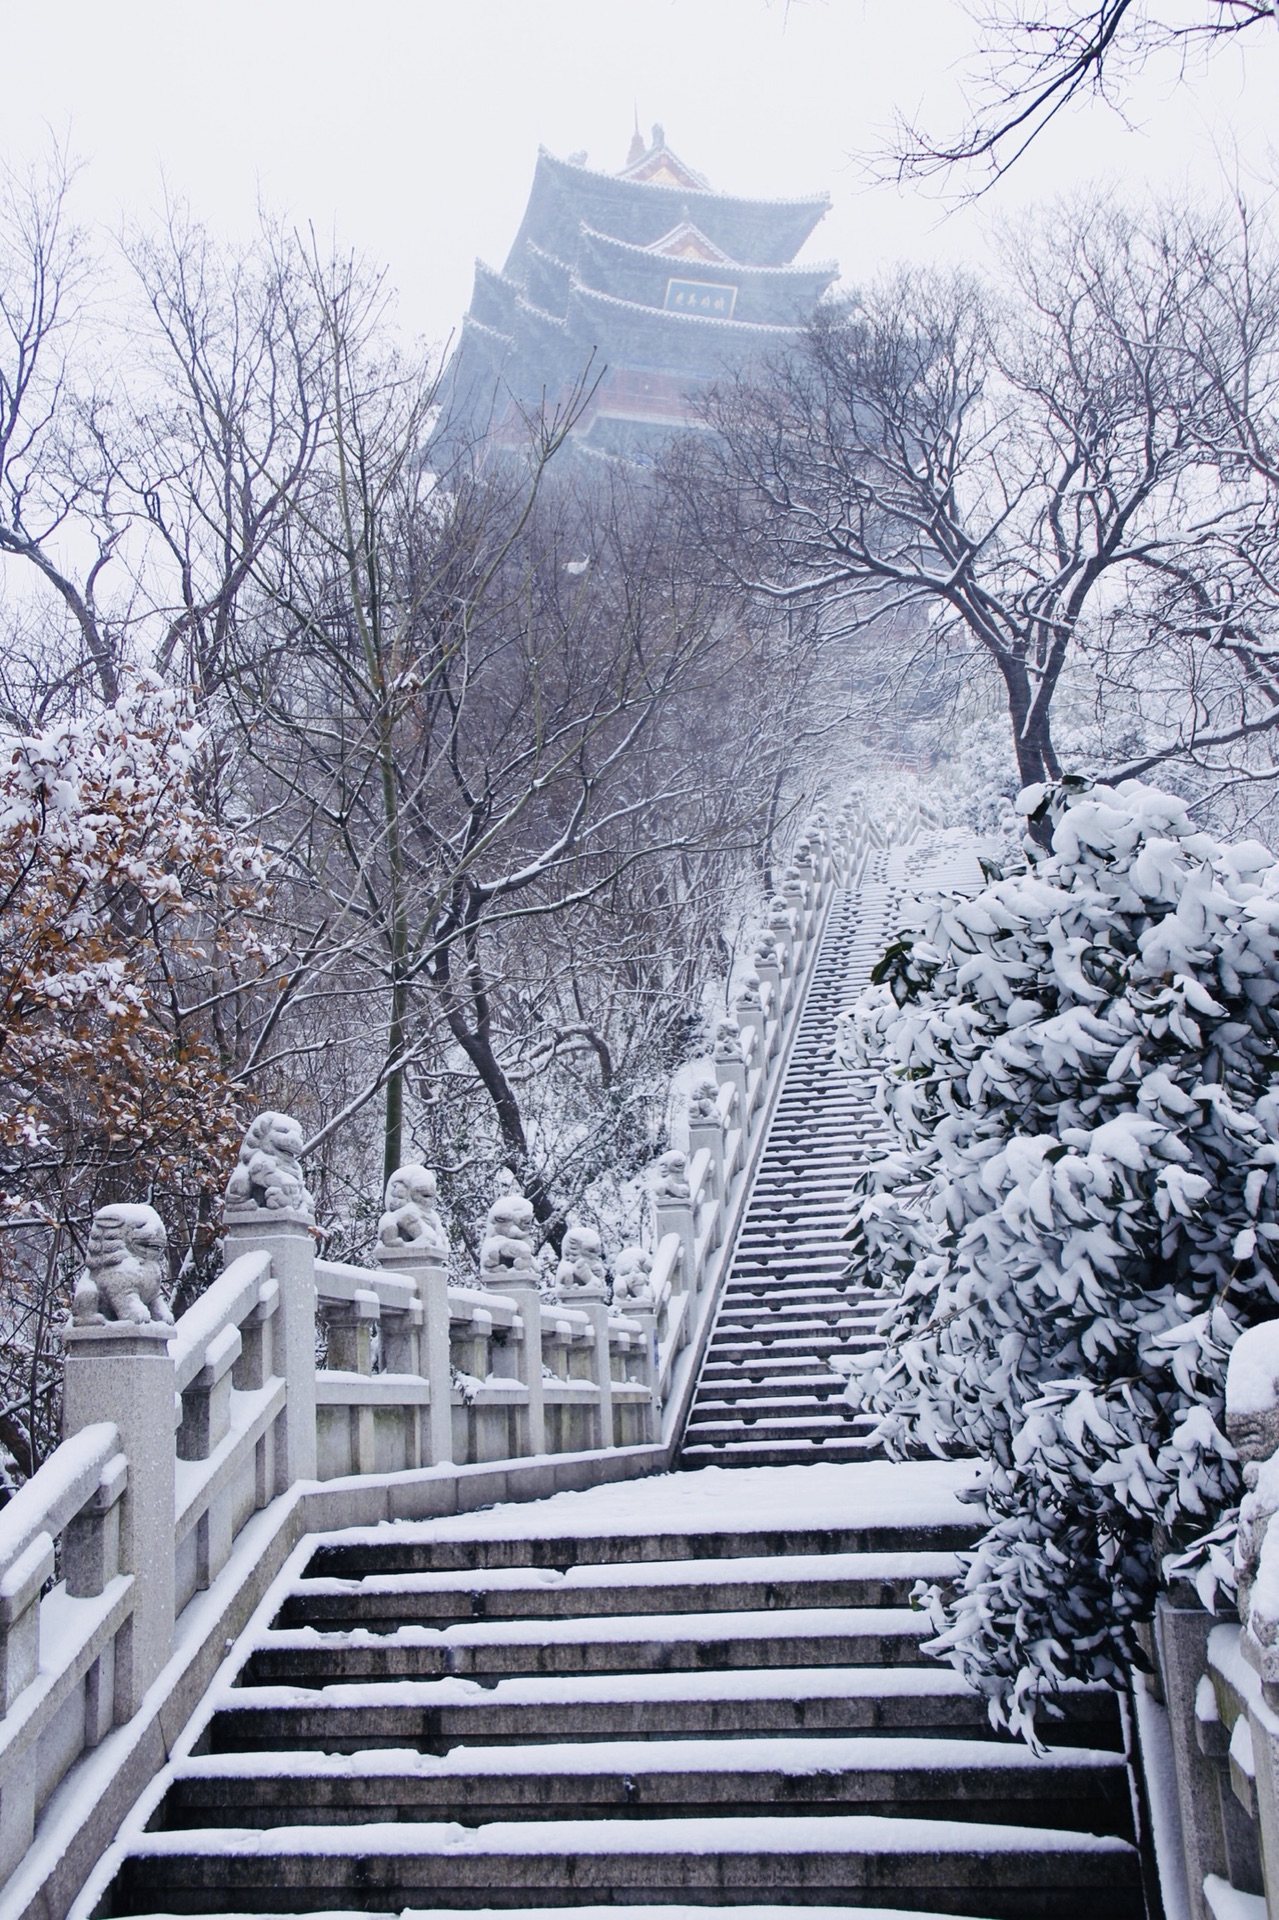 南京雪景图片大全唯美图片